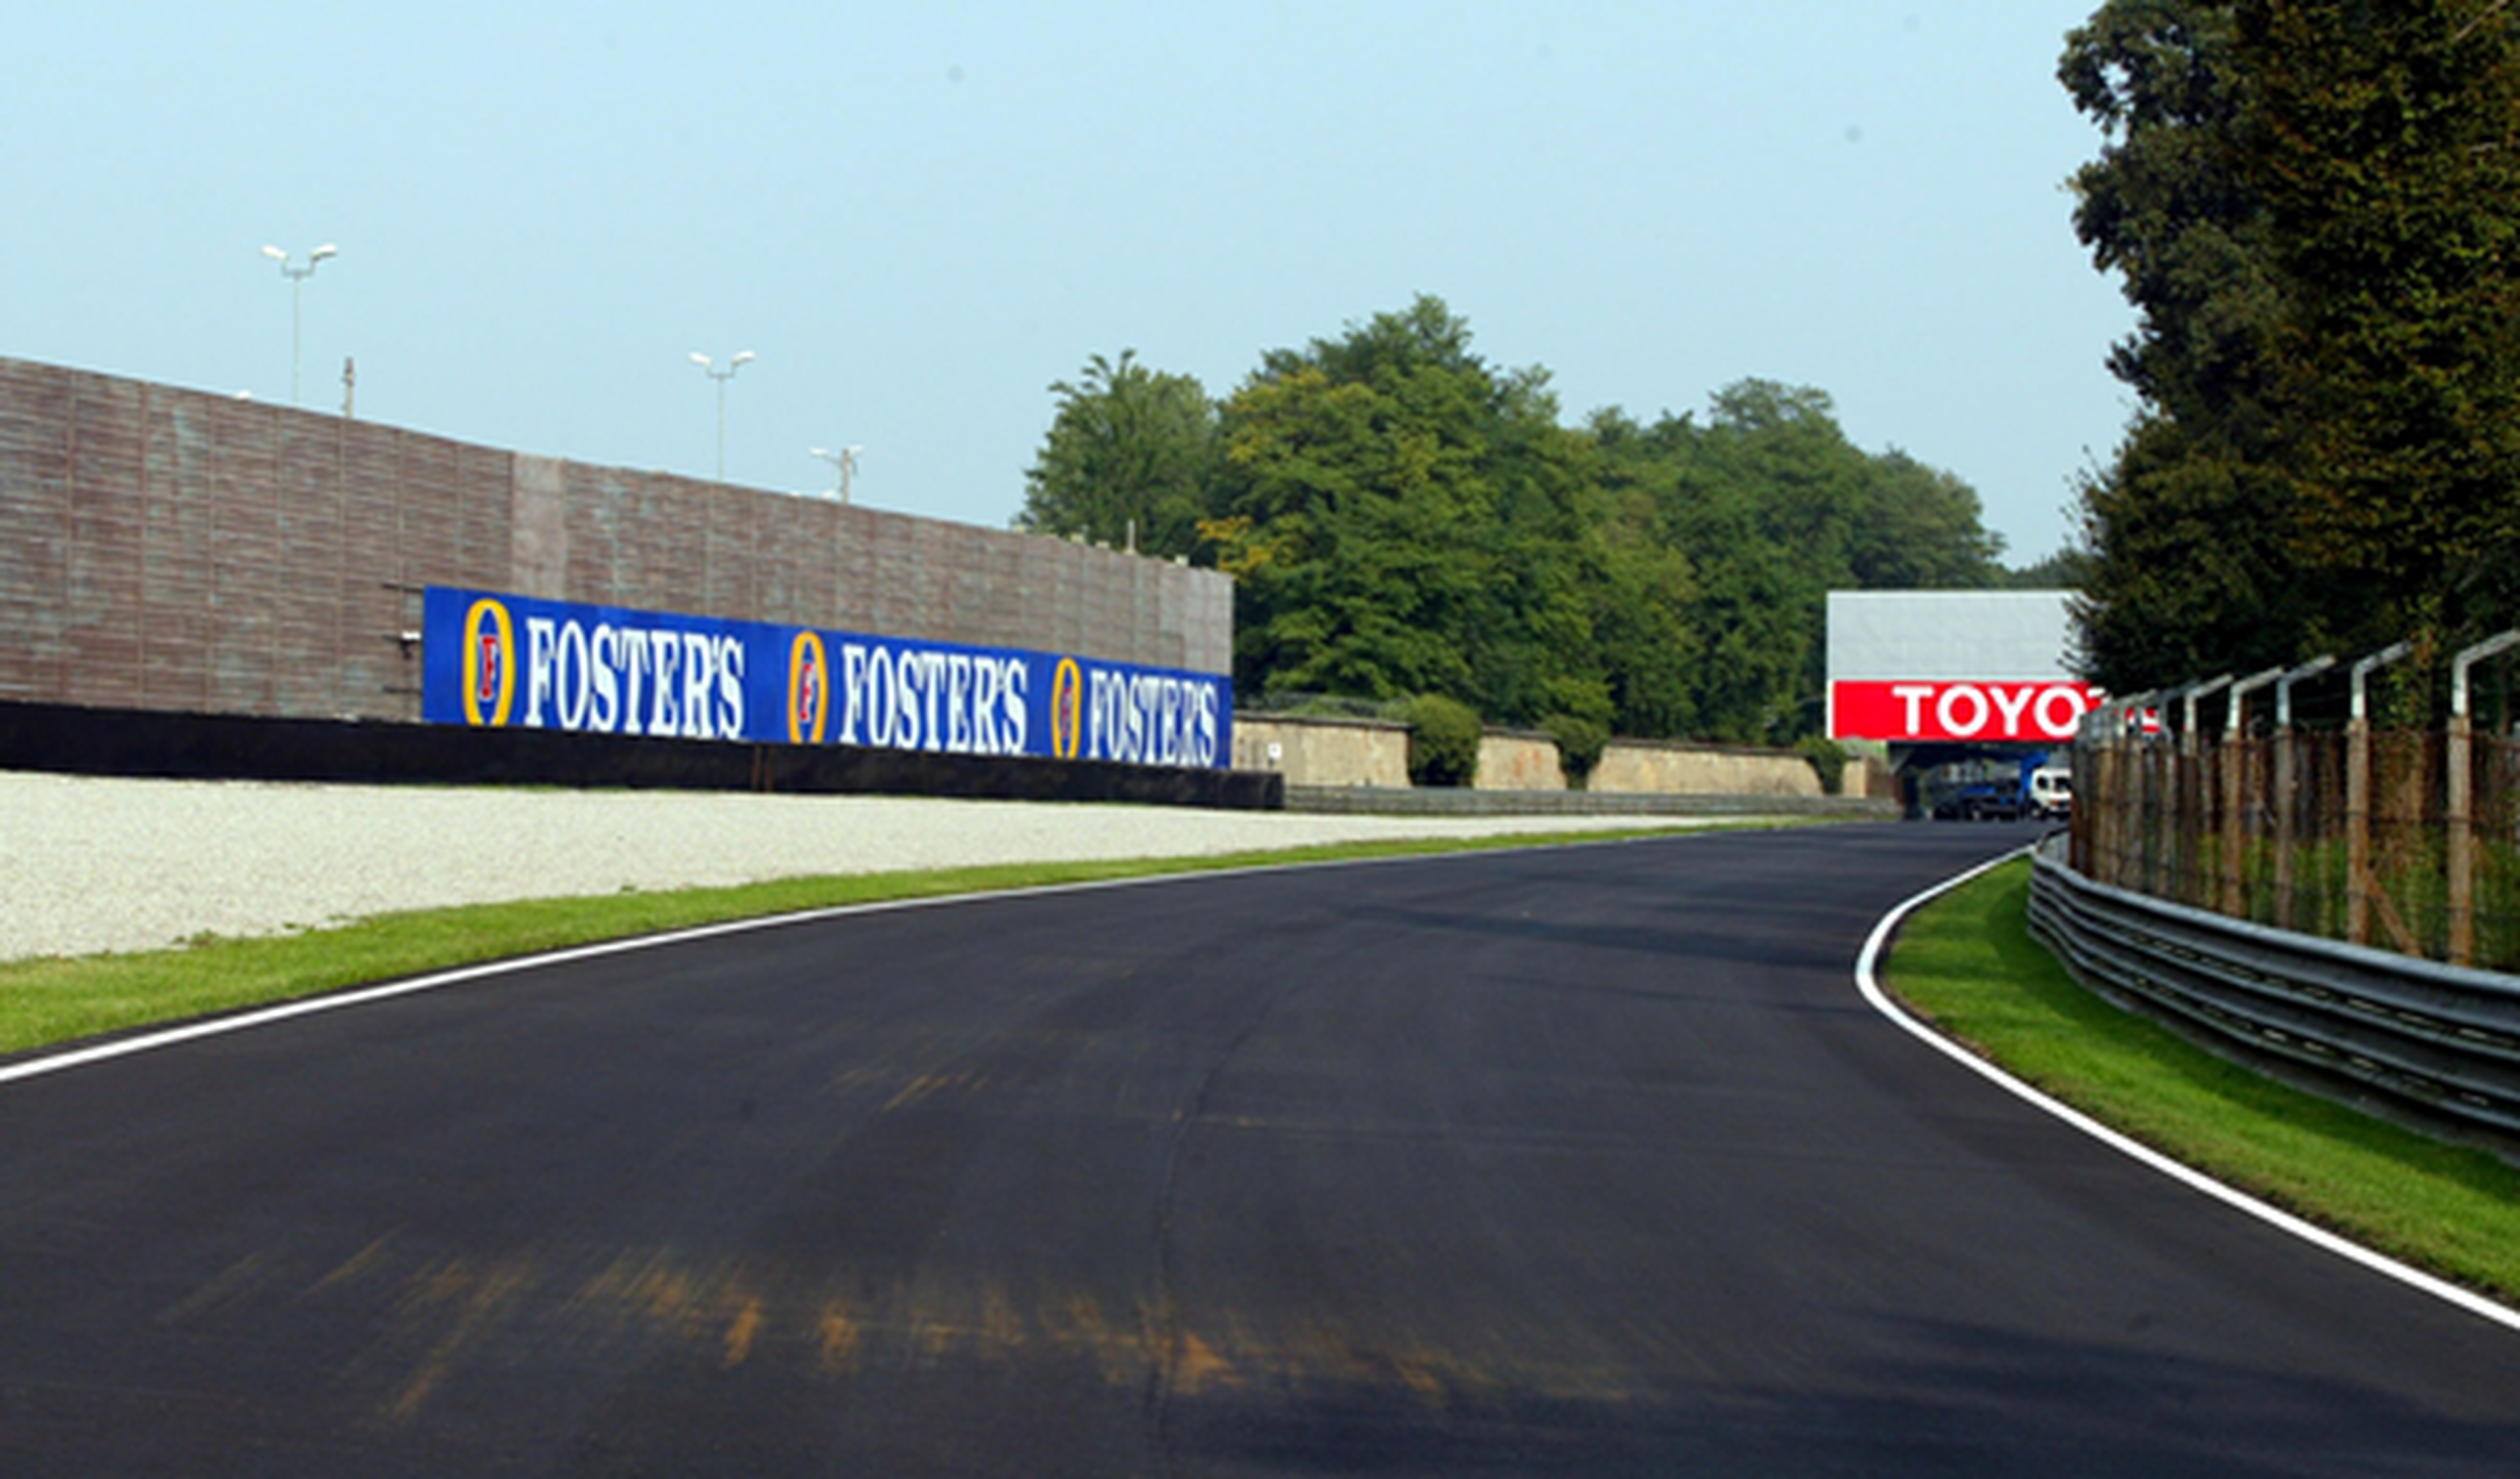 Una nueva chicane podría modificar el Circuito de Monza